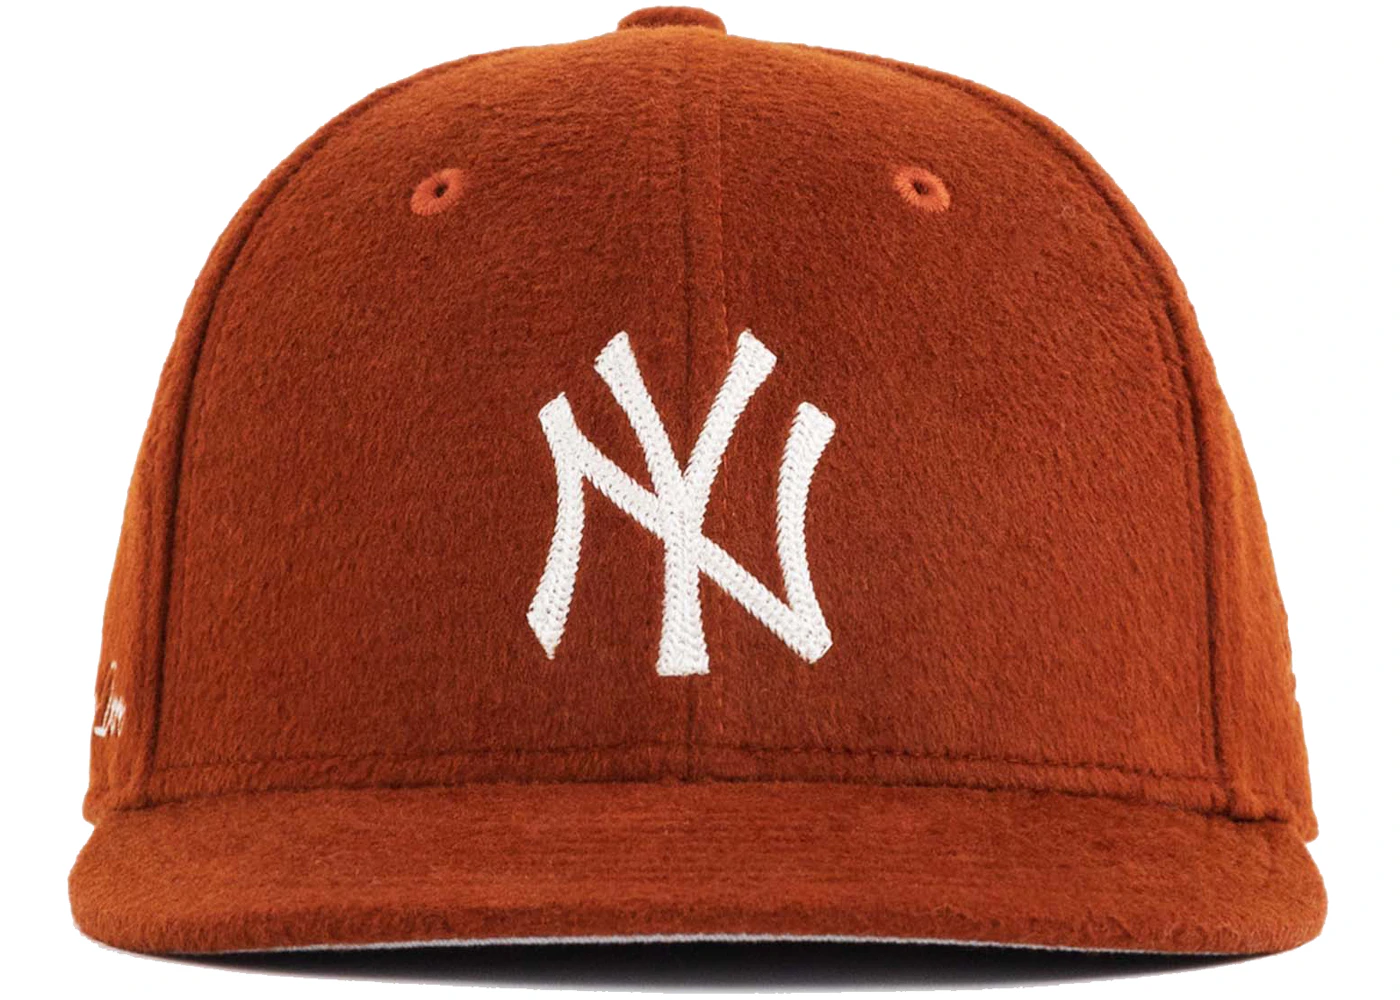 Aime Leon Dore x New Era Moleskin Yankees Hat Orange Men's - FW21 - US